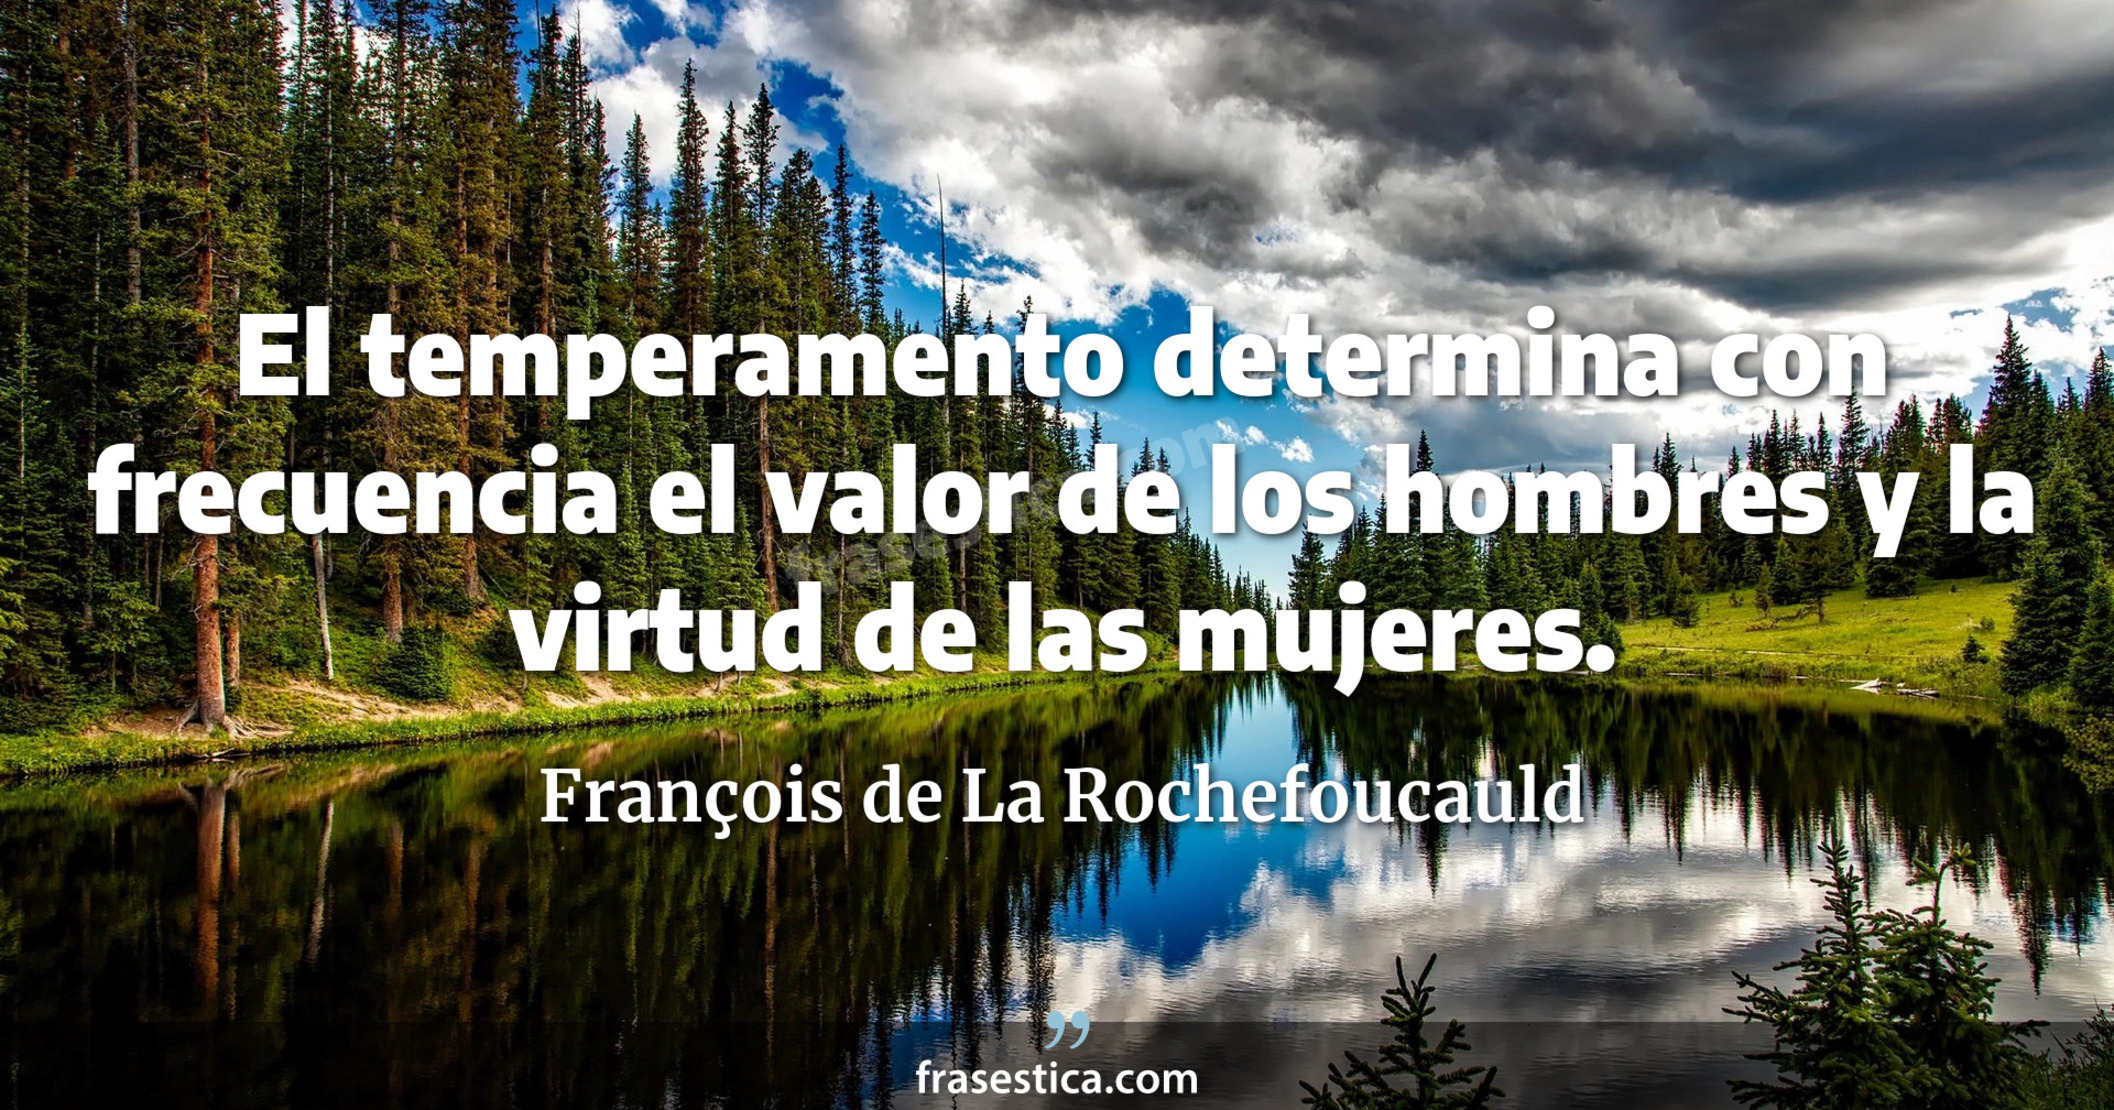 El temperamento determina con frecuencia el valor de los hombres y la virtud de las mujeres. - François de La Rochefoucauld